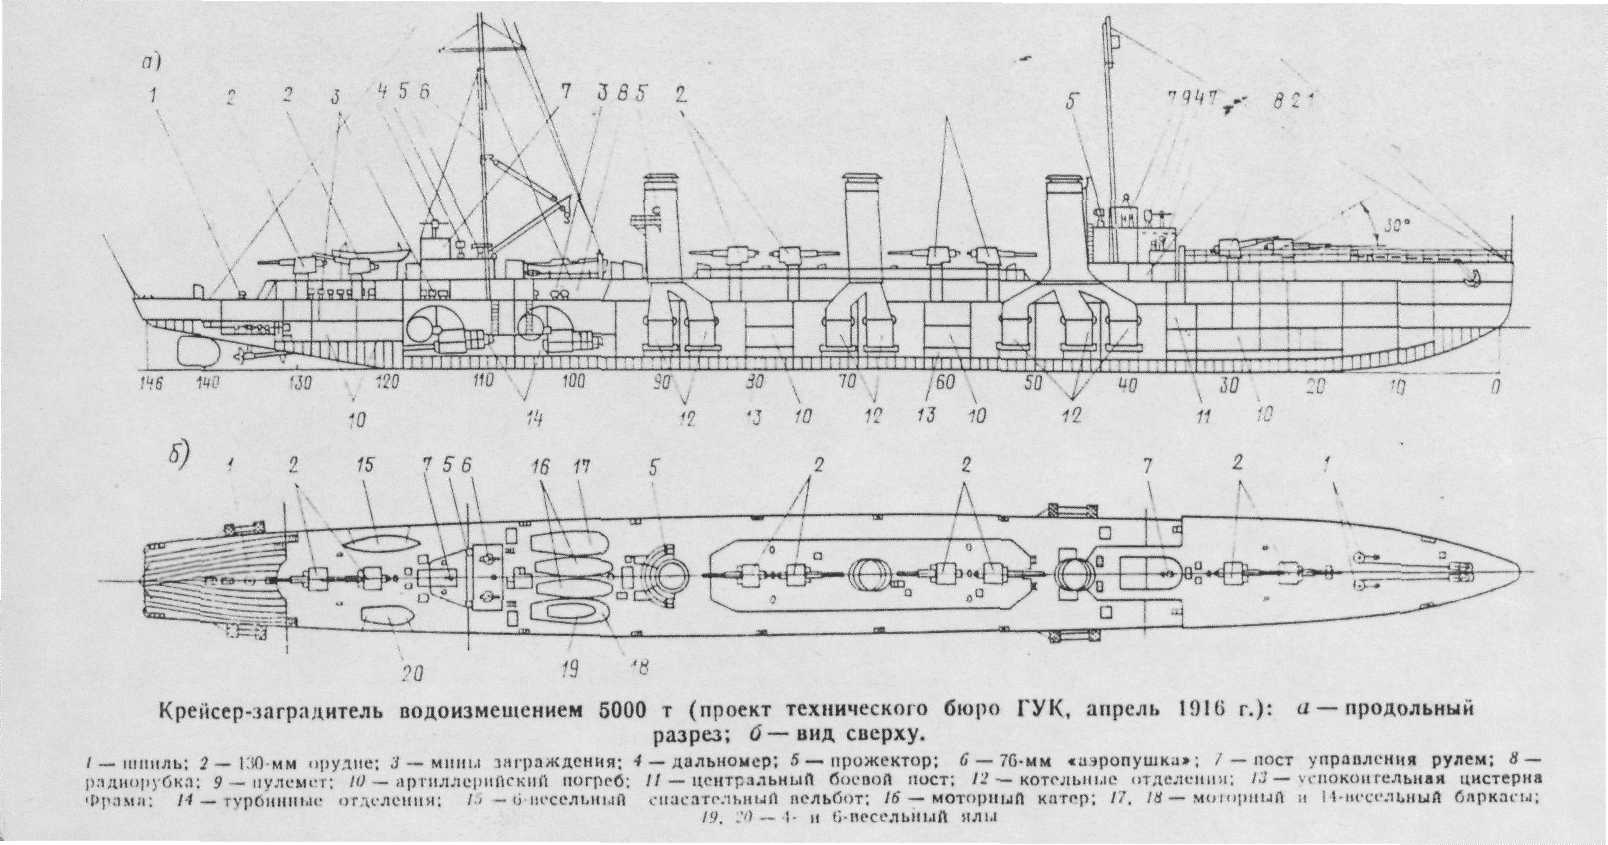 Проекты крейсеров-заградителей судостроительной программы 1915 г.